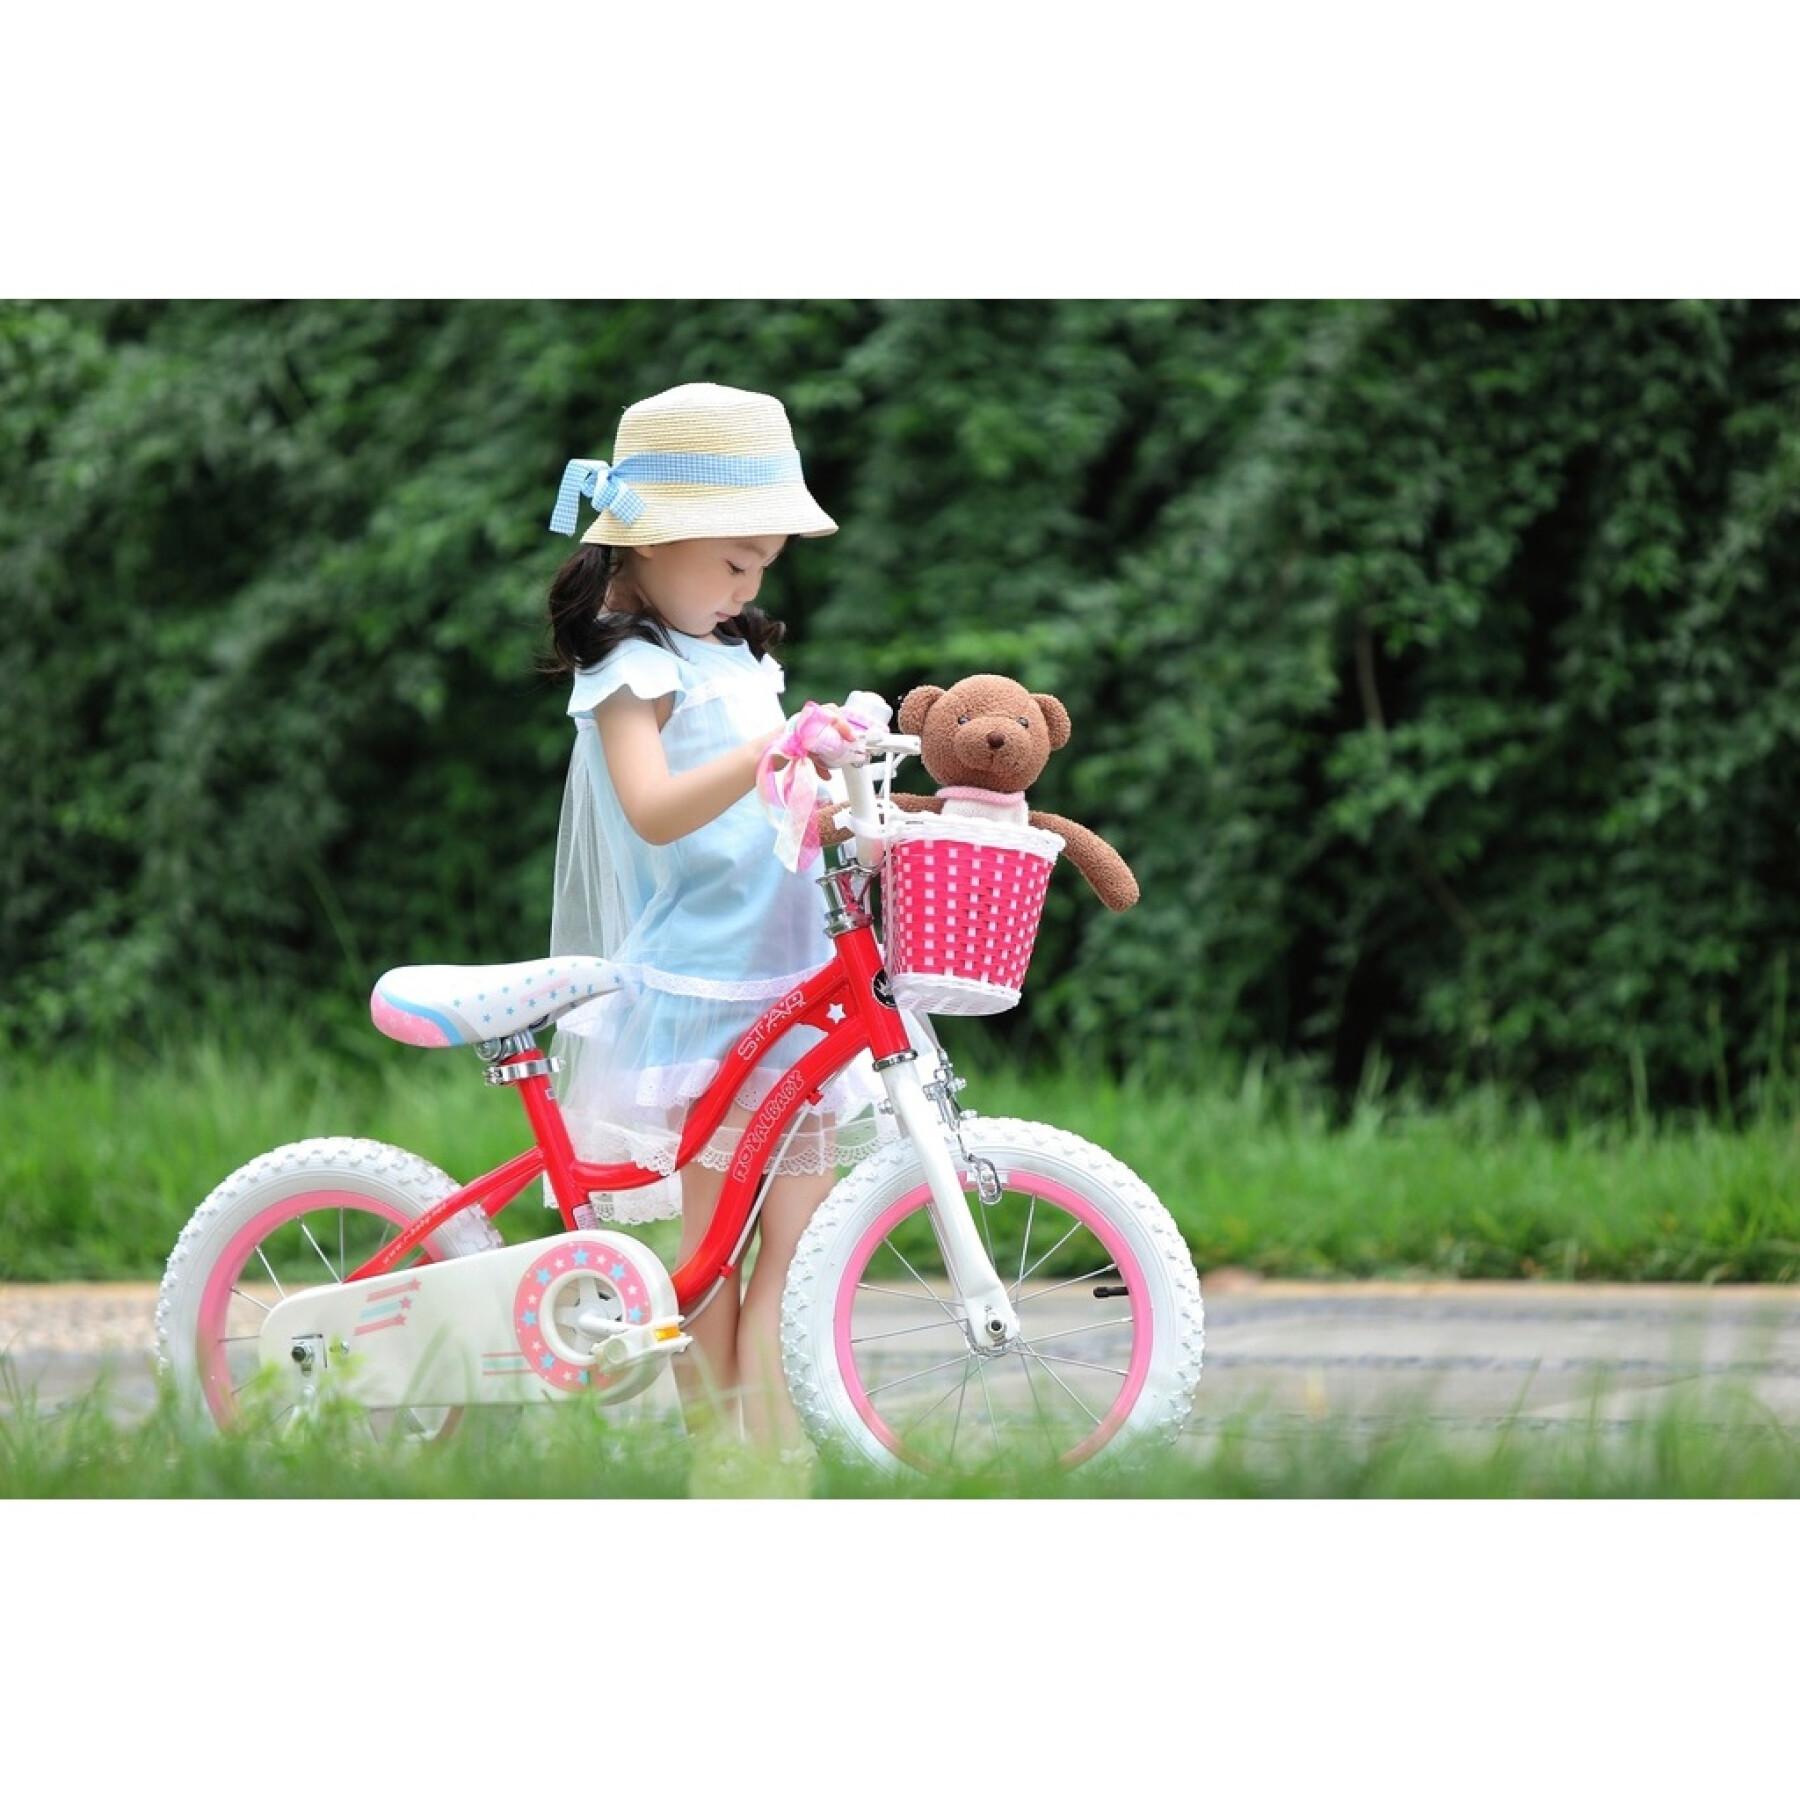 Bicicletta da bambina RoyalBaby Star 14